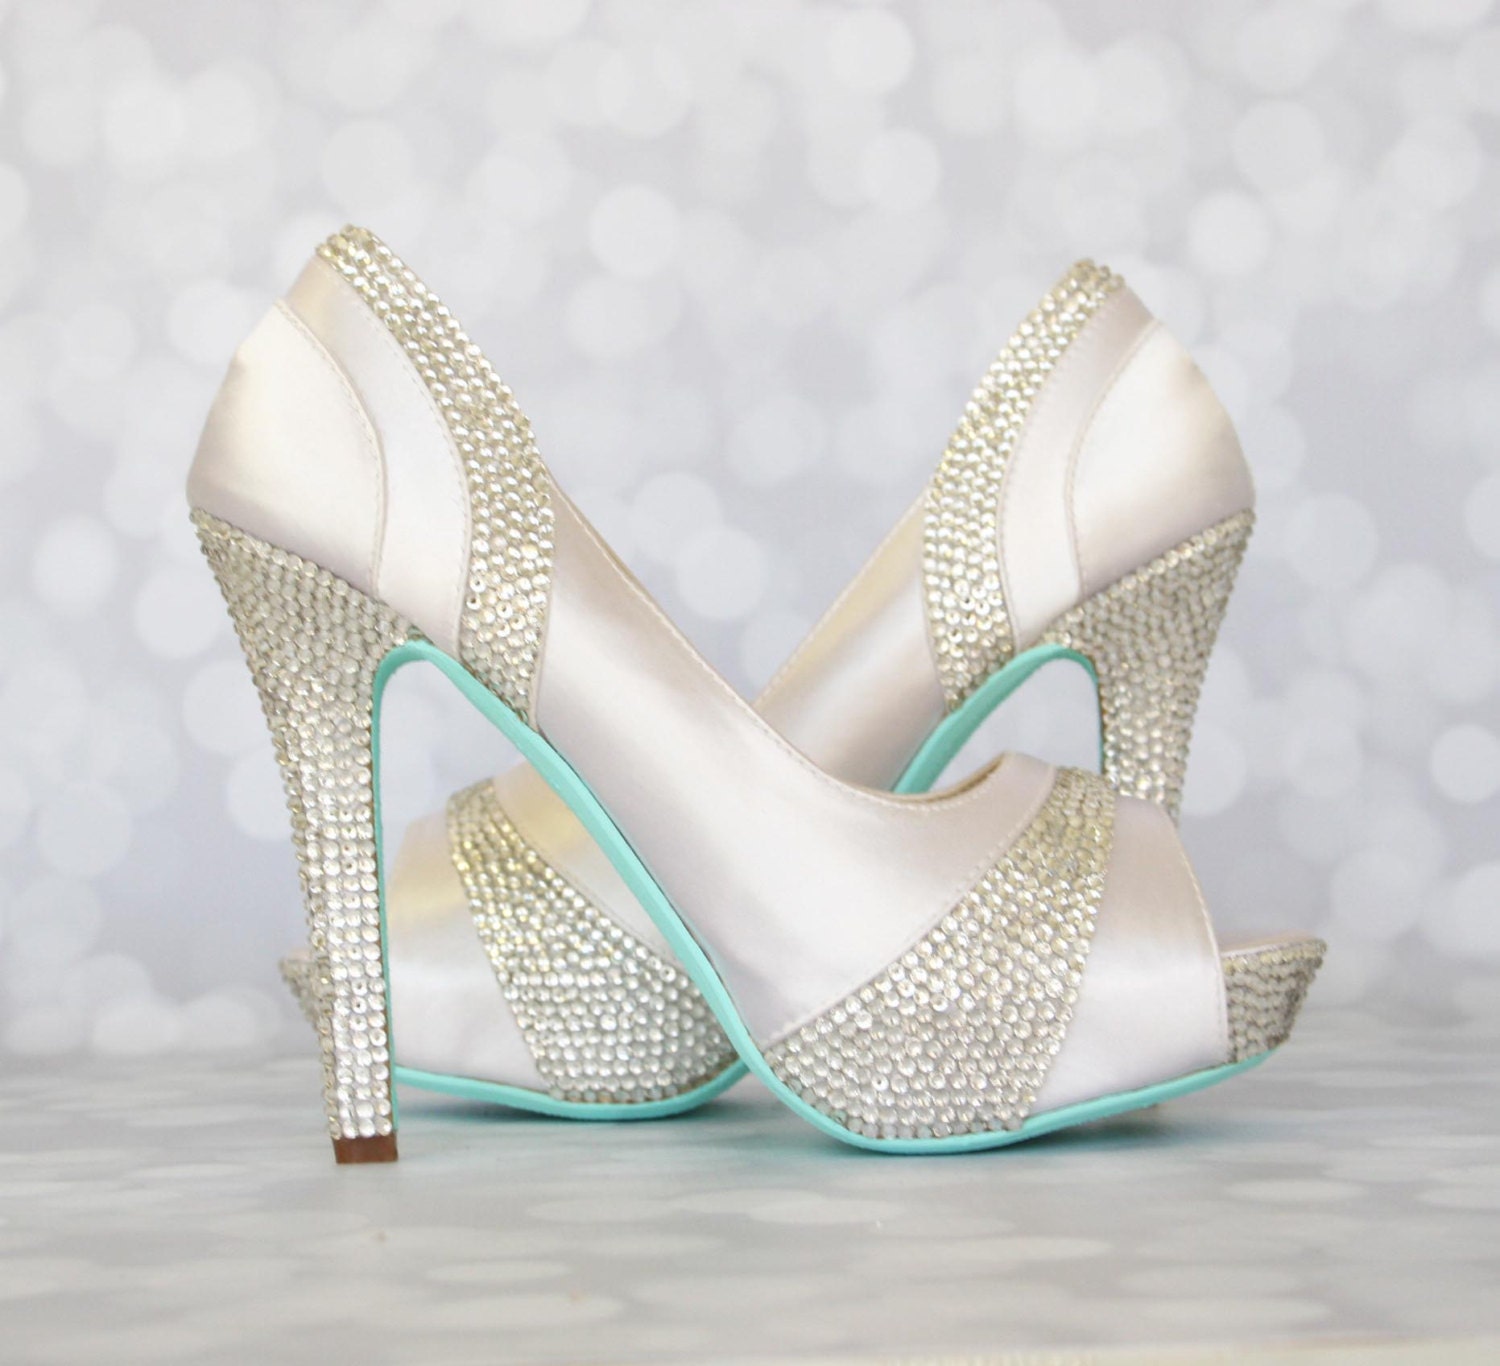 Wedding Shoes White Platform Peep Toe Wedding Shoes with